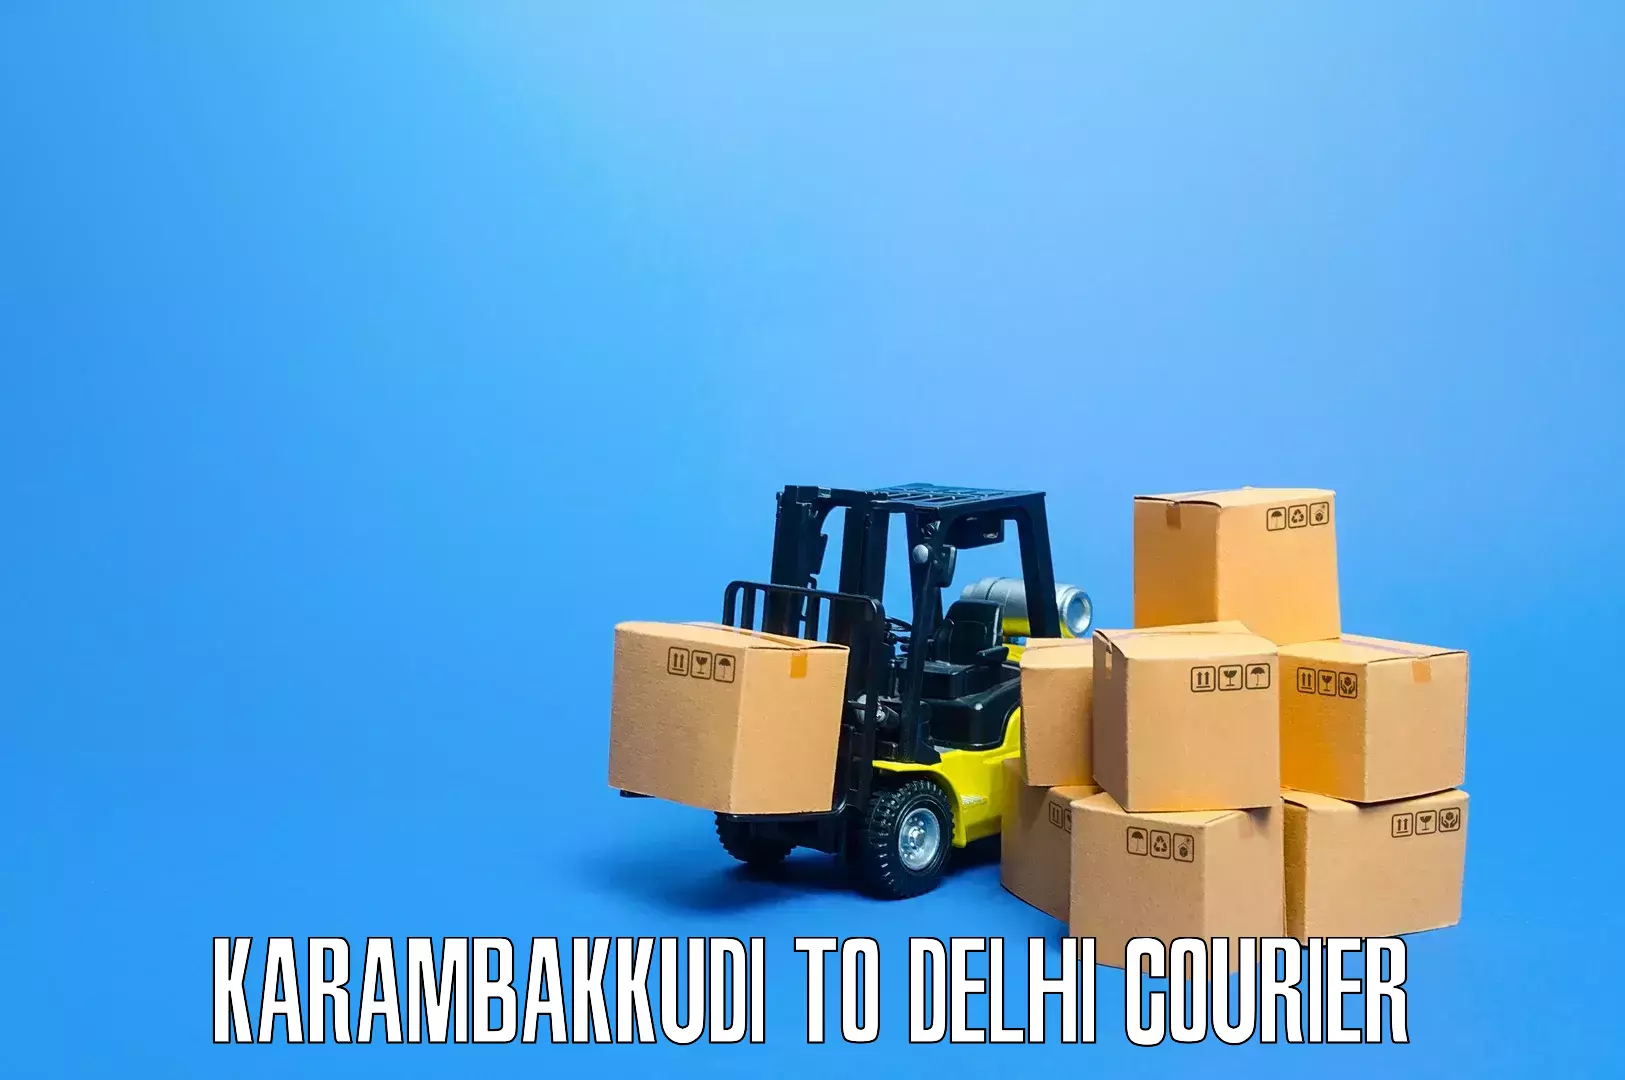 Quality relocation assistance Karambakkudi to Delhi